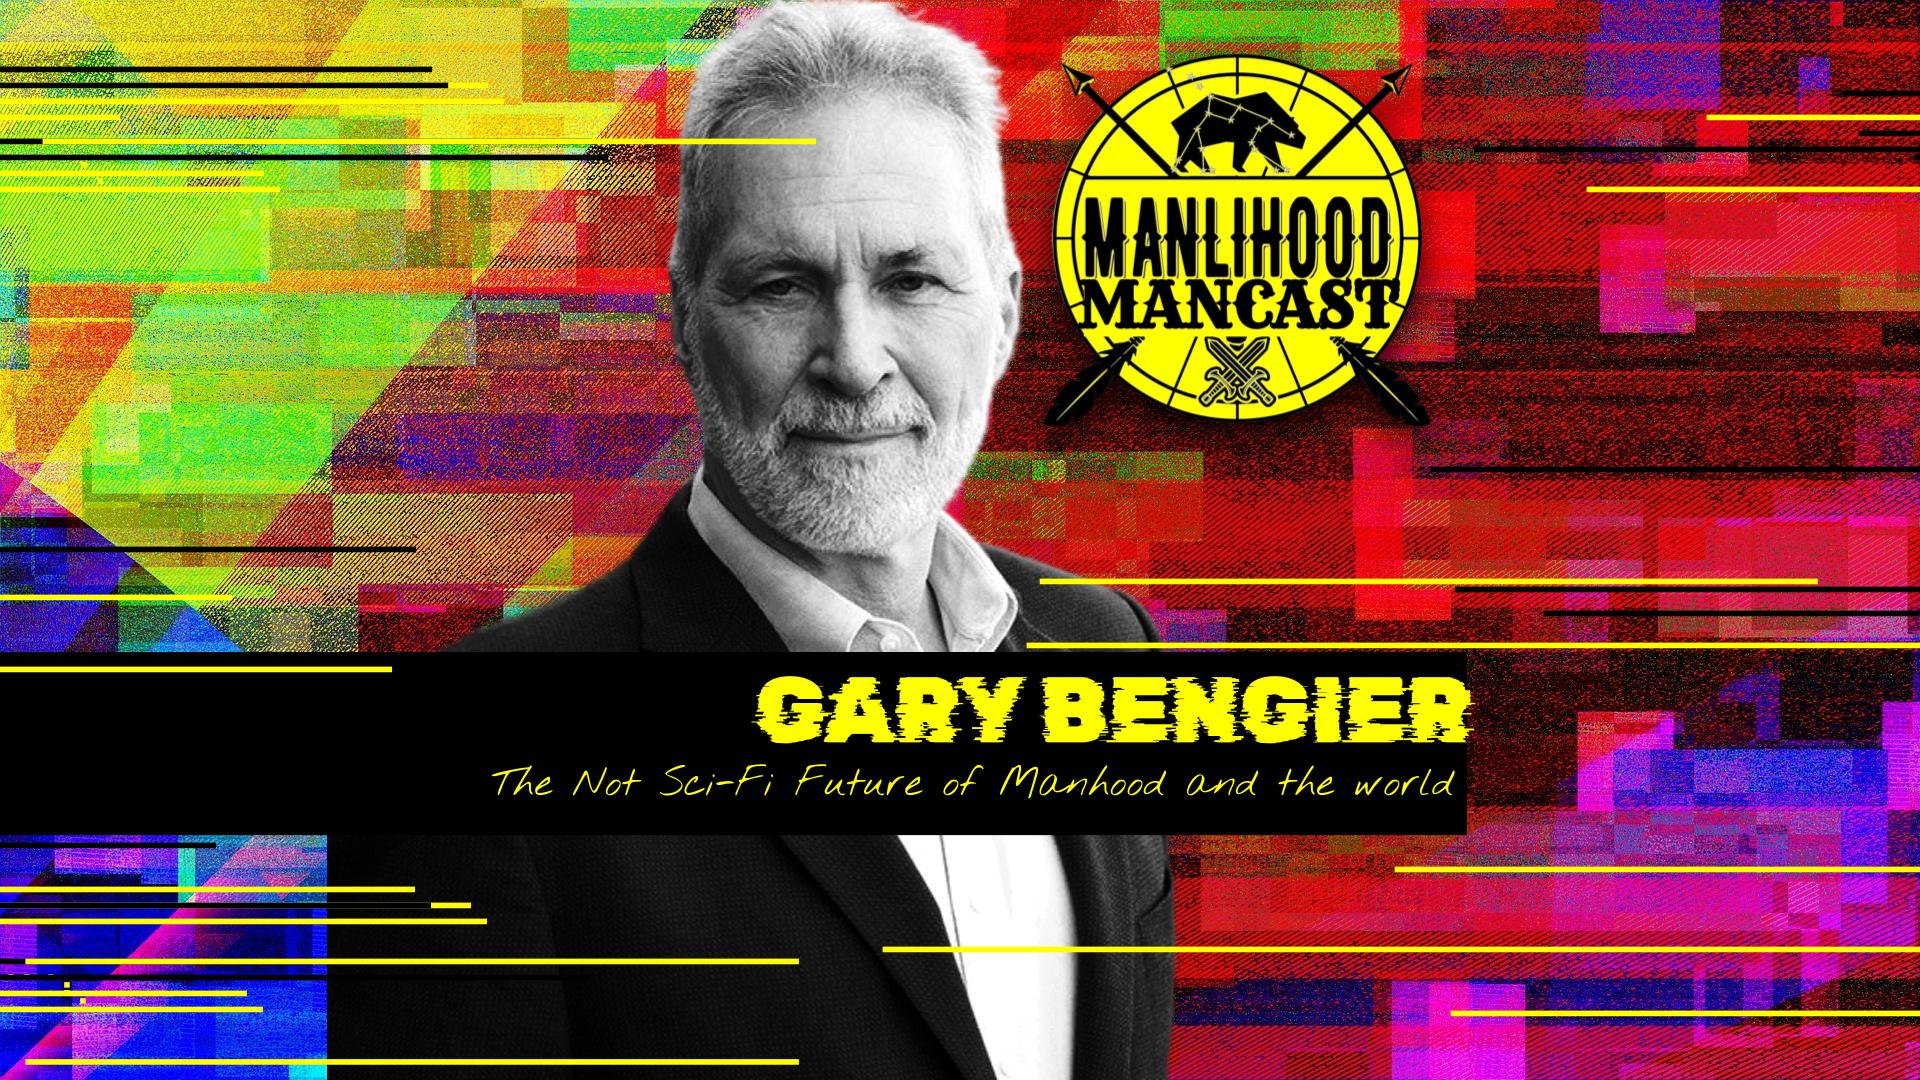 Gary Bengier